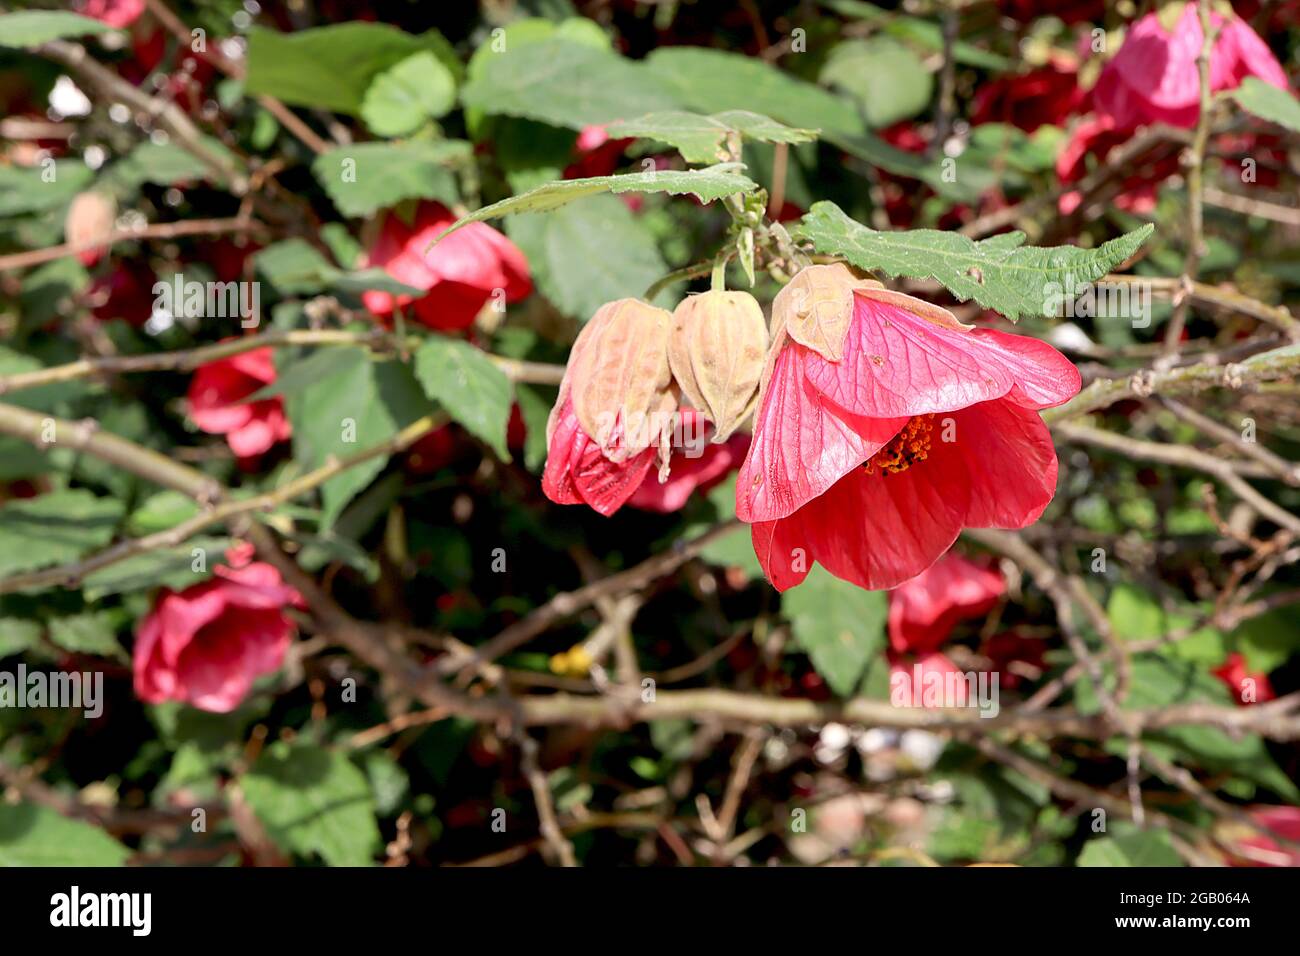 Aphrodite, lanterne chinoise Aphrodite – fleurs en forme de cloche rose foncé et feuilles ressemblant à de l’érable, juin, Angleterre, Royaume-Uni Banque D'Images